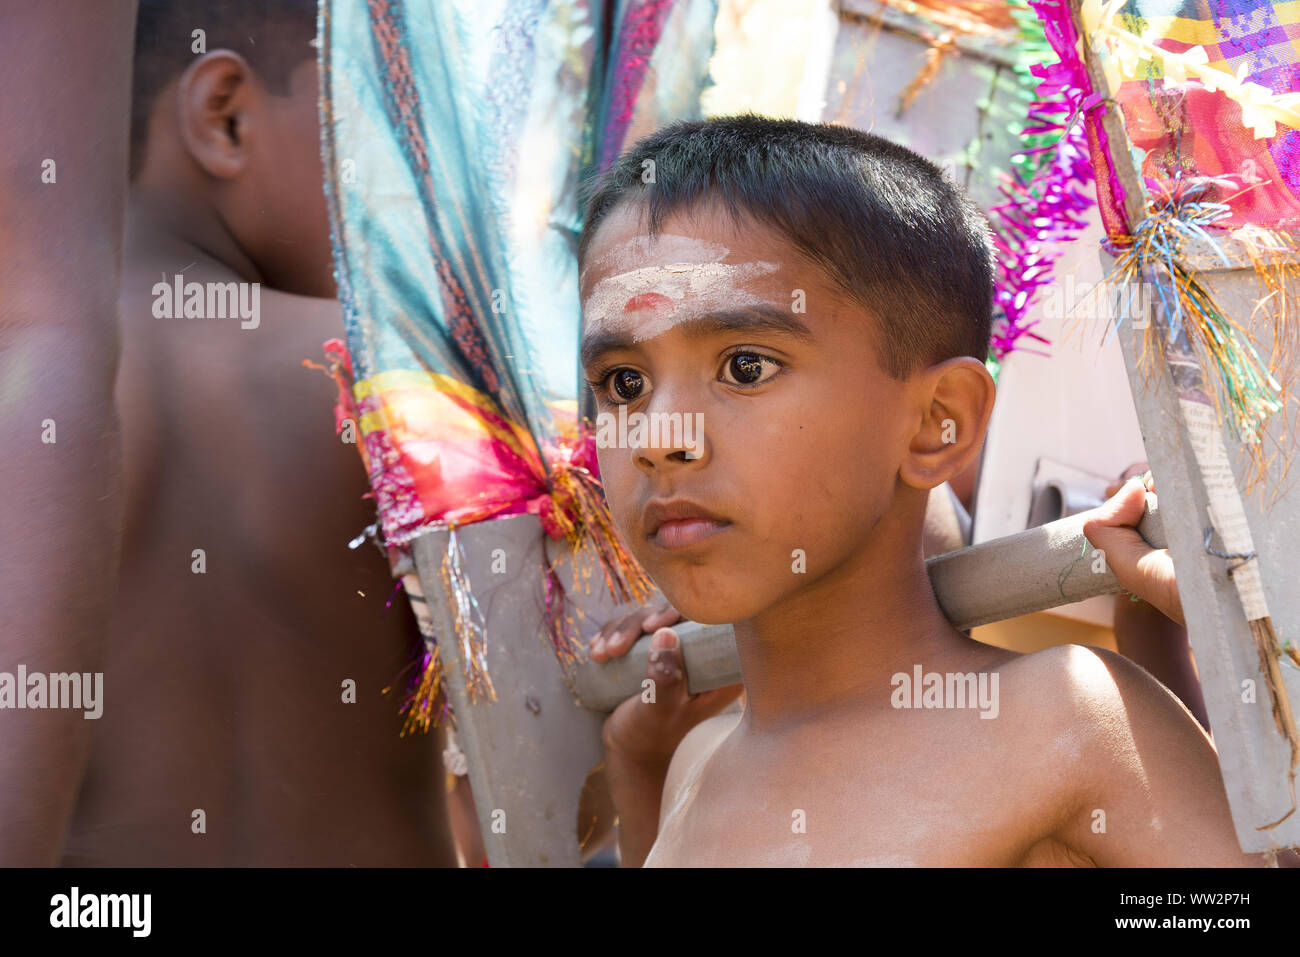 Pussellawa, Sri Lanka, 20.03.2019: Hindu Festival der Thaipusam - Body Piercing Rituale unter dem Blut Mond. Junge mit symbolischen Gehalt. Stockfoto